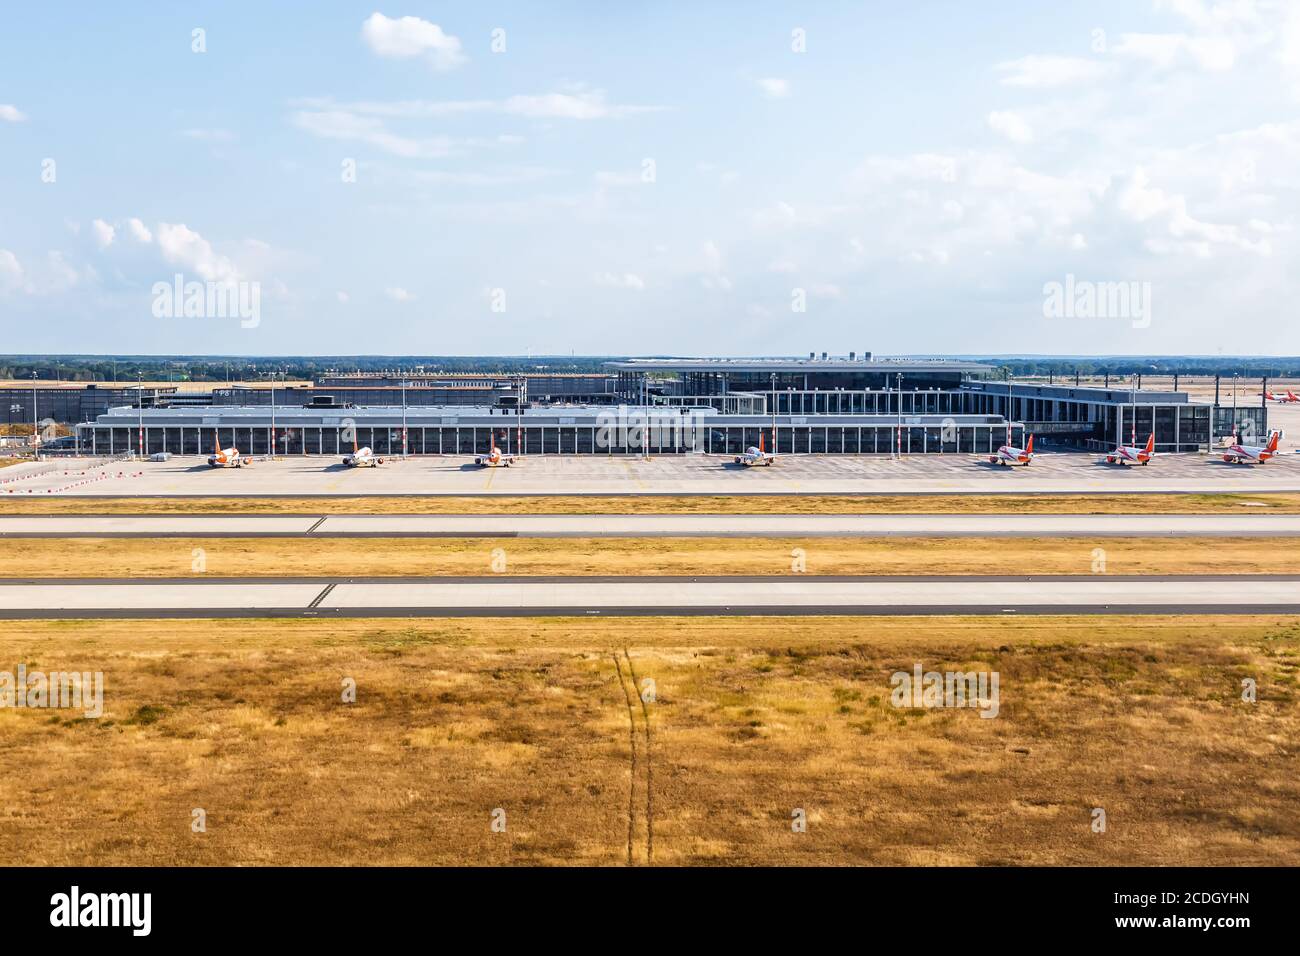 Berlín, Alemania - 19 de agosto de 2020: Berlín Brandenburgo Aeropuerto BER Terminal Norte muelle vista aérea foto en Alemania. Foto de stock